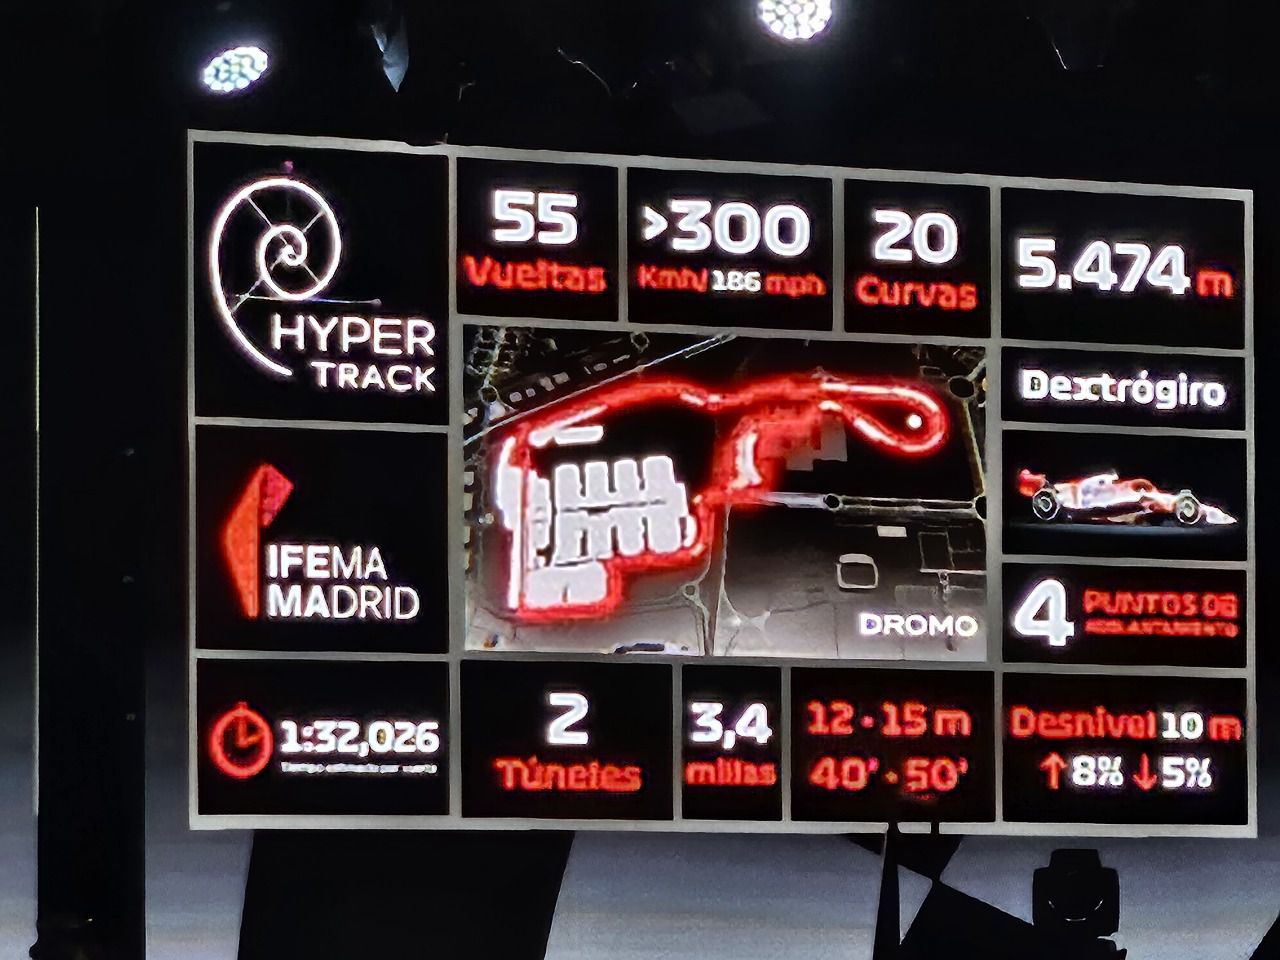 Datos destacados del circuito de Madrid